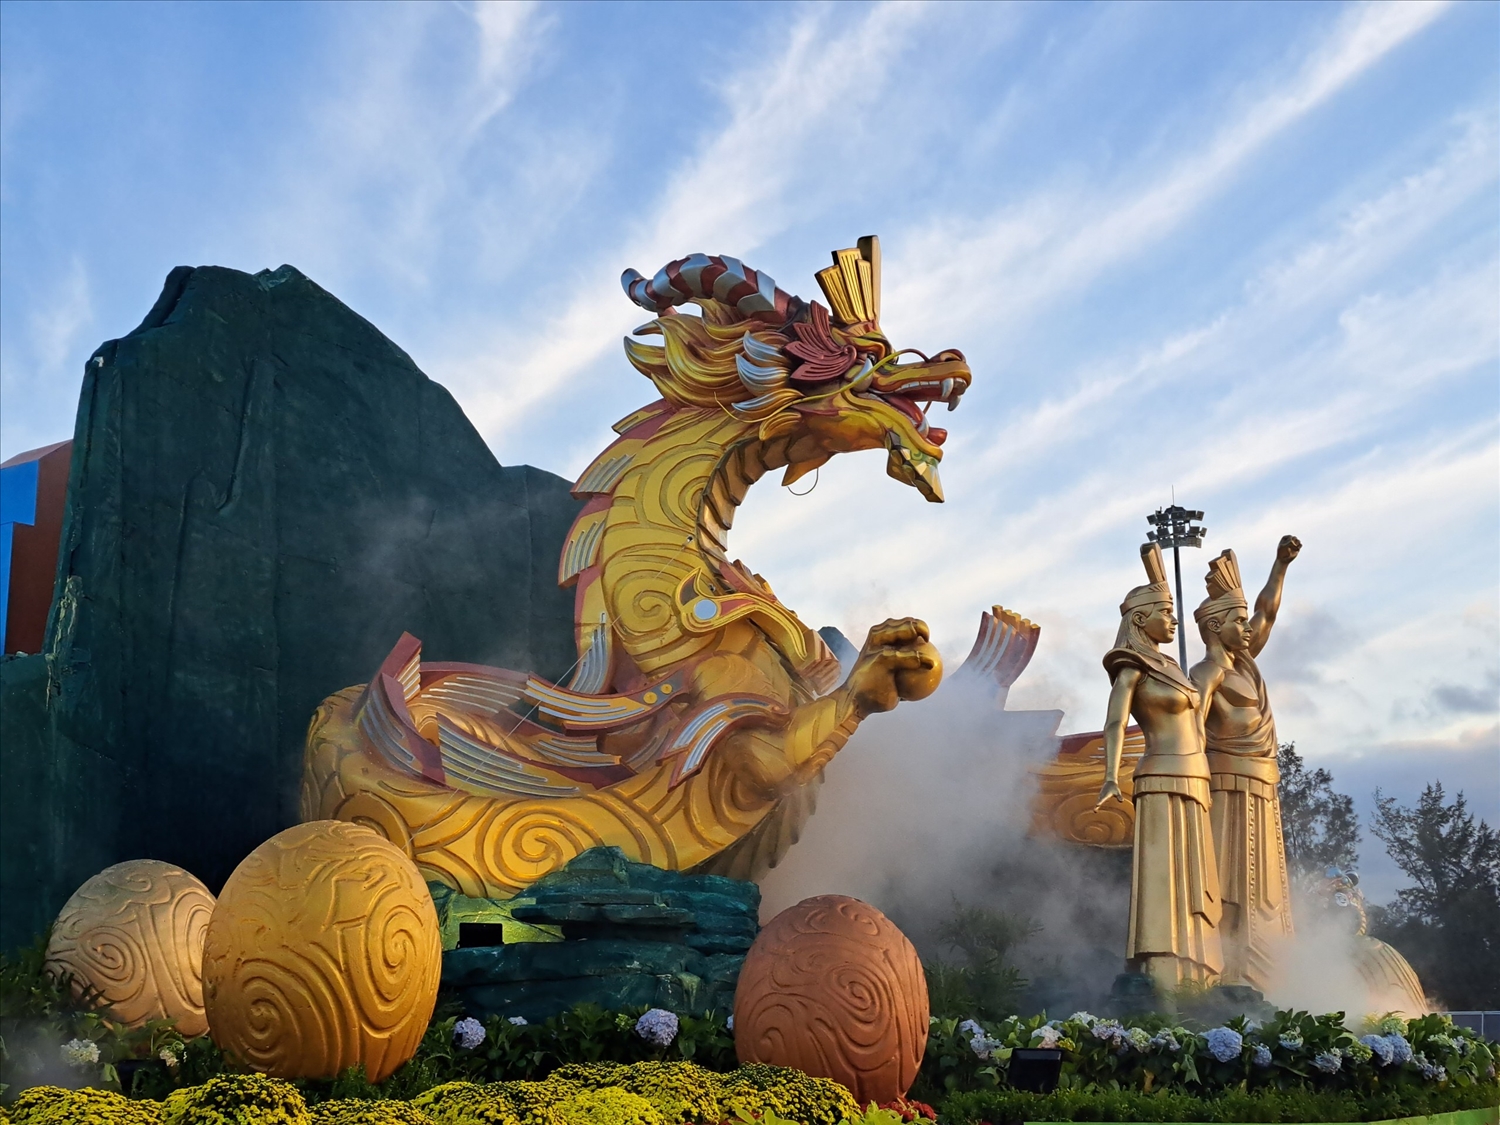 Cụm biểu tượng linh vật thể hiện niềm tự hào về nòi giống Tiên Rồng và truyền thống lịch sử, văn hoá của dân tộc Việt Nam với khát vọng vươn lên trở thành “Rồng” của đất nước và quê hương Bình Định”